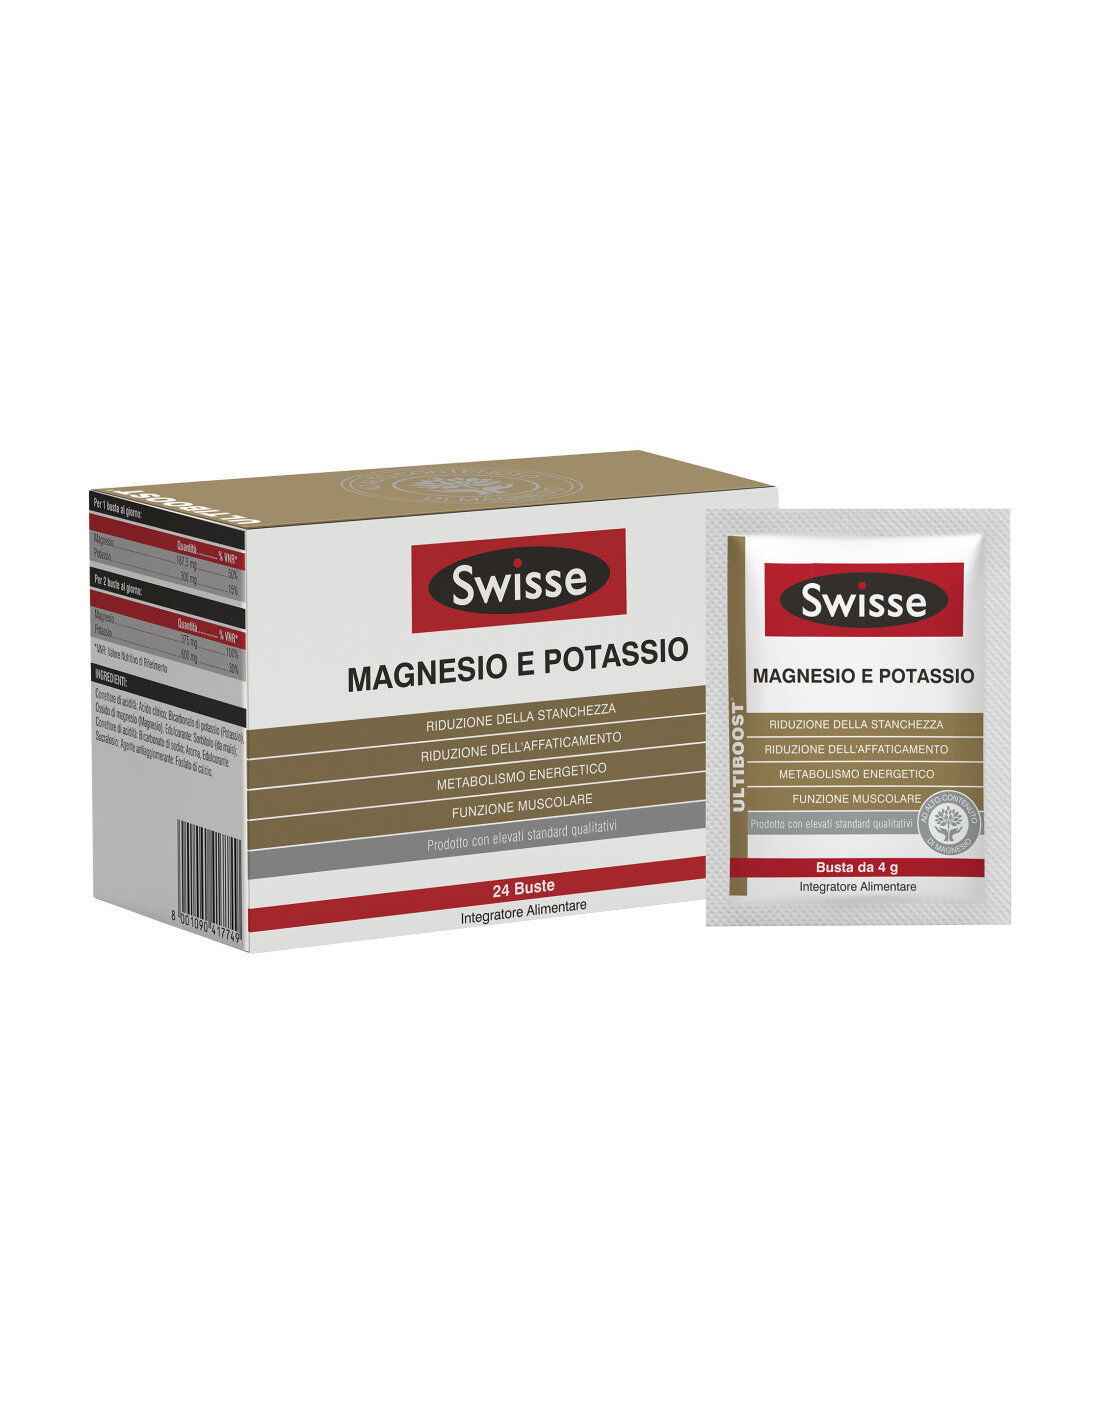 SWISSE Magnesio E Potassio 24 Buste